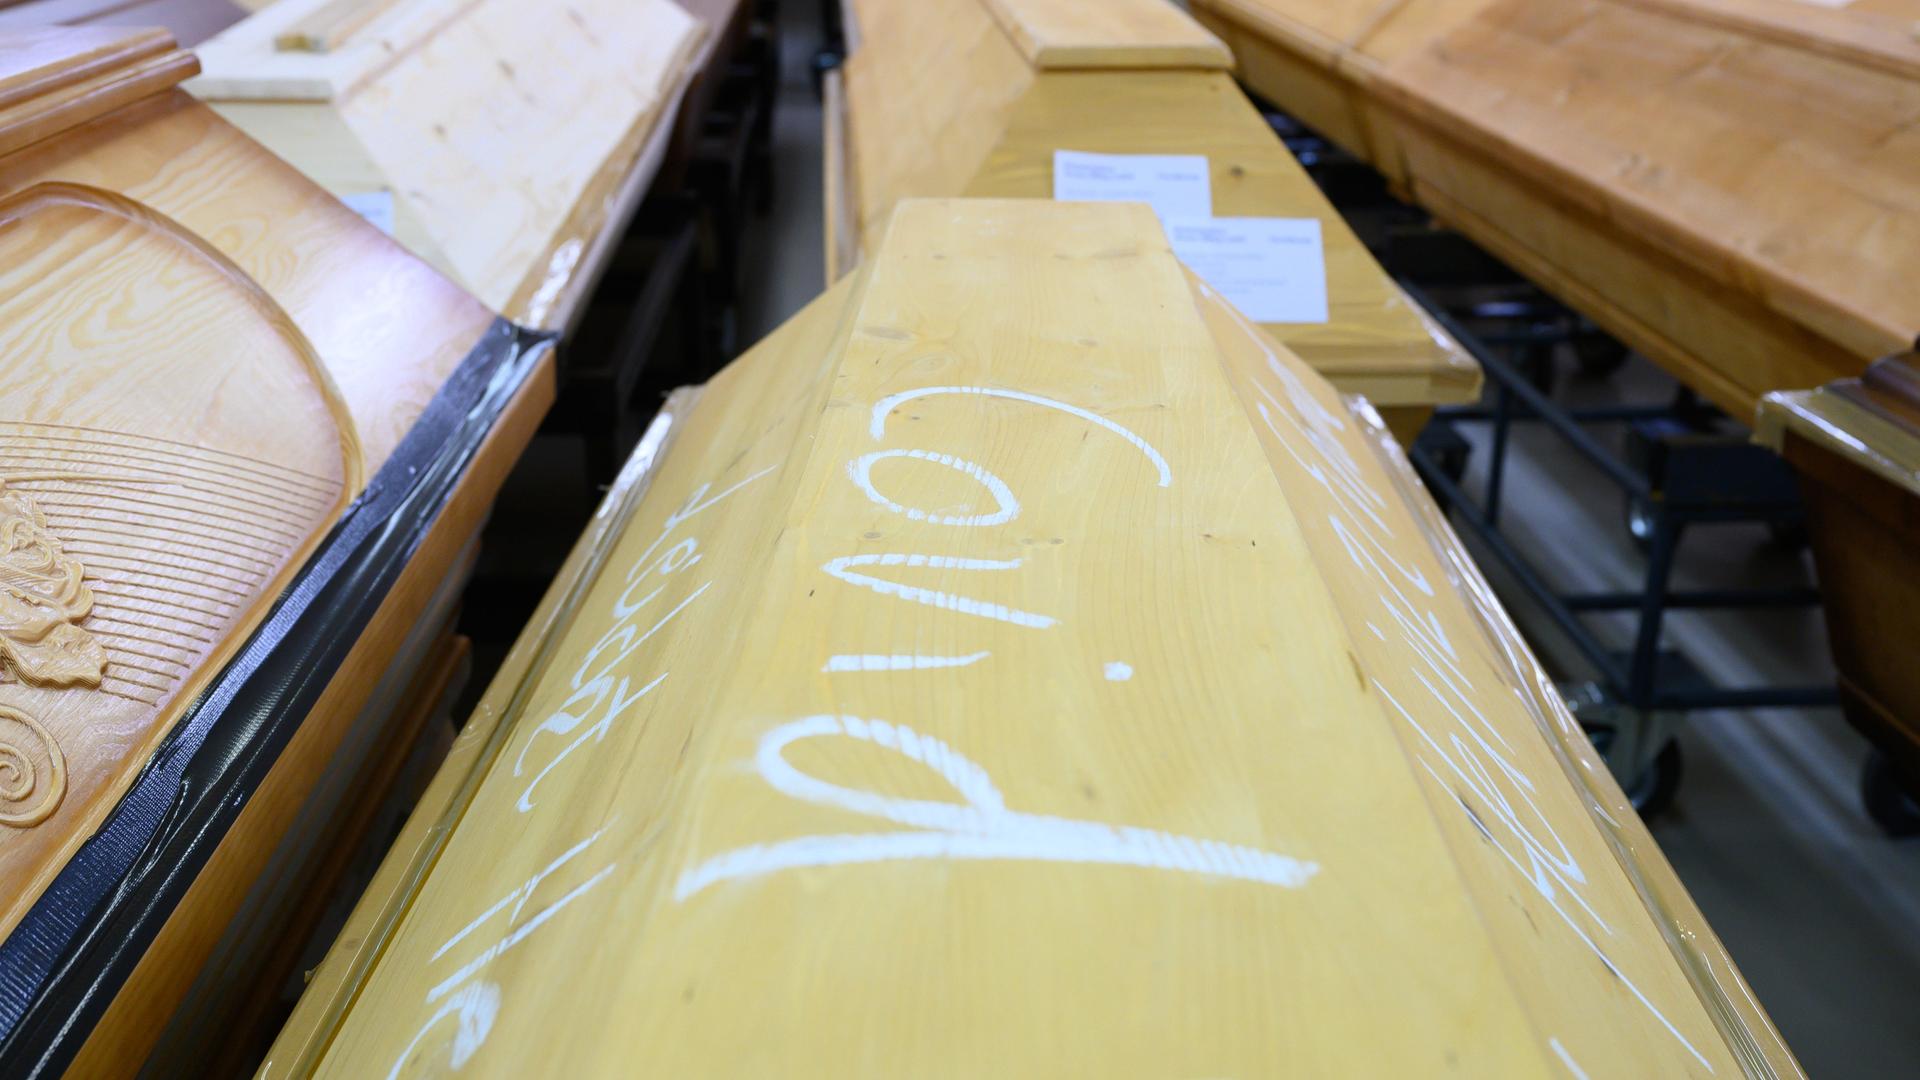 Ein Holzsarg mit Kreideaufschrift "Covid", daneben und im Hintergrund weitere Särge